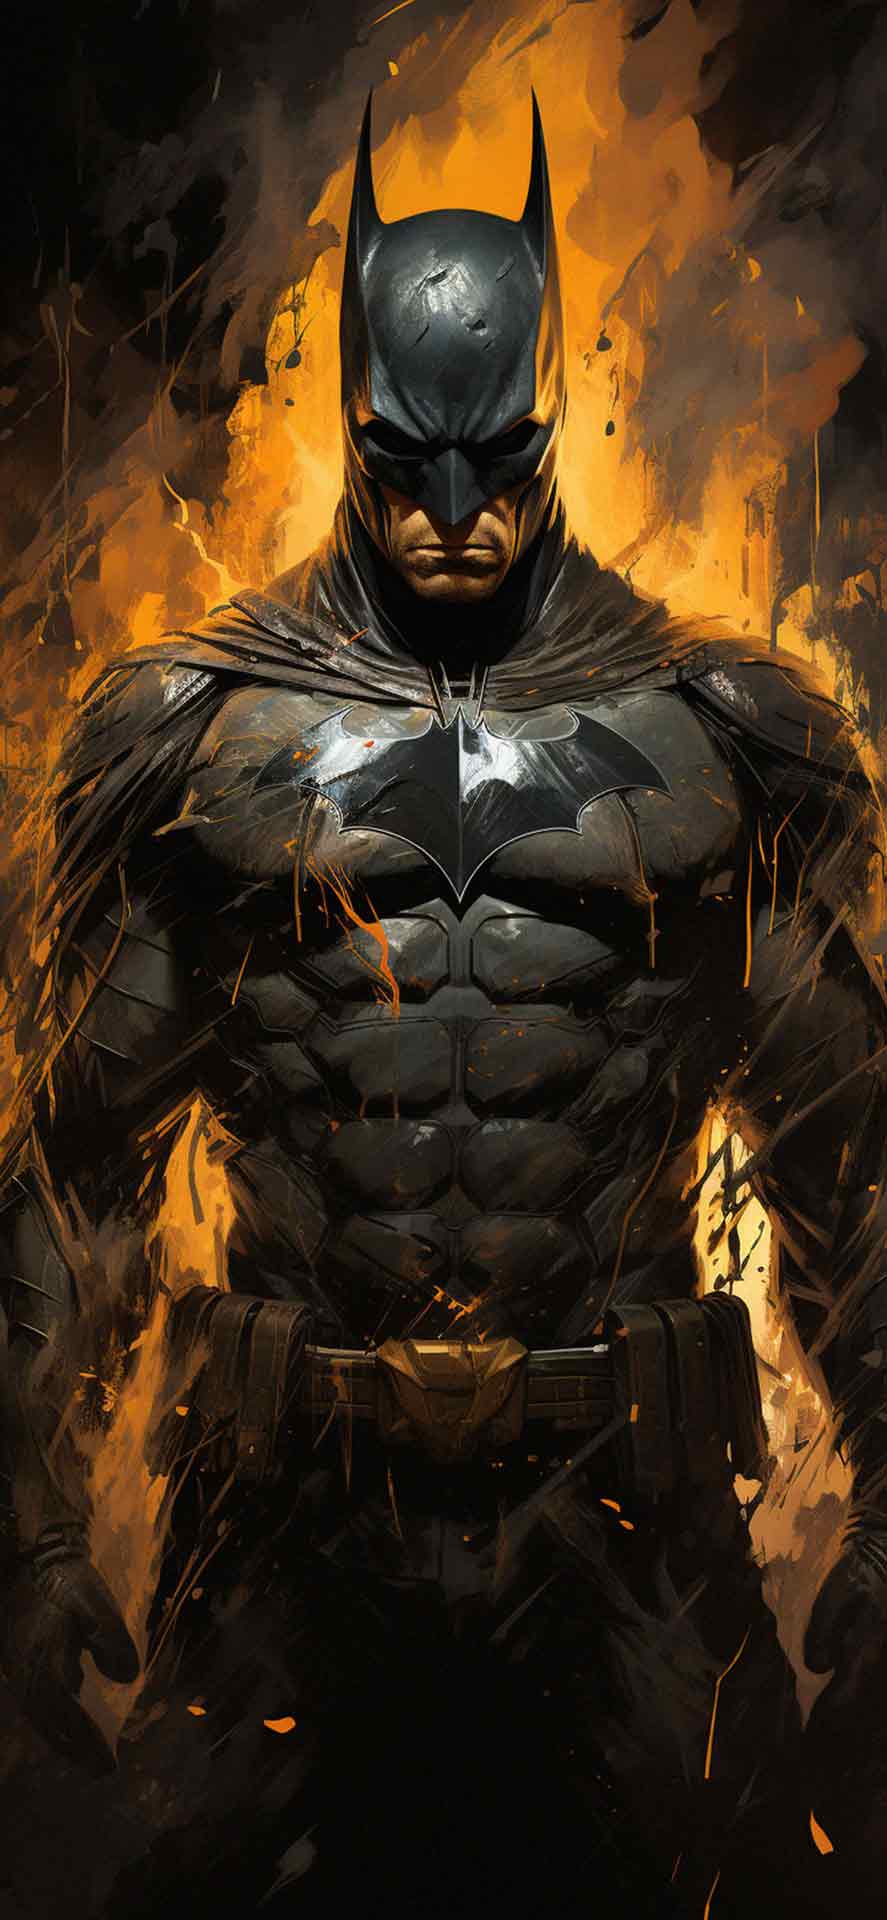 DC残酷蝙蝠侠着火壁纸